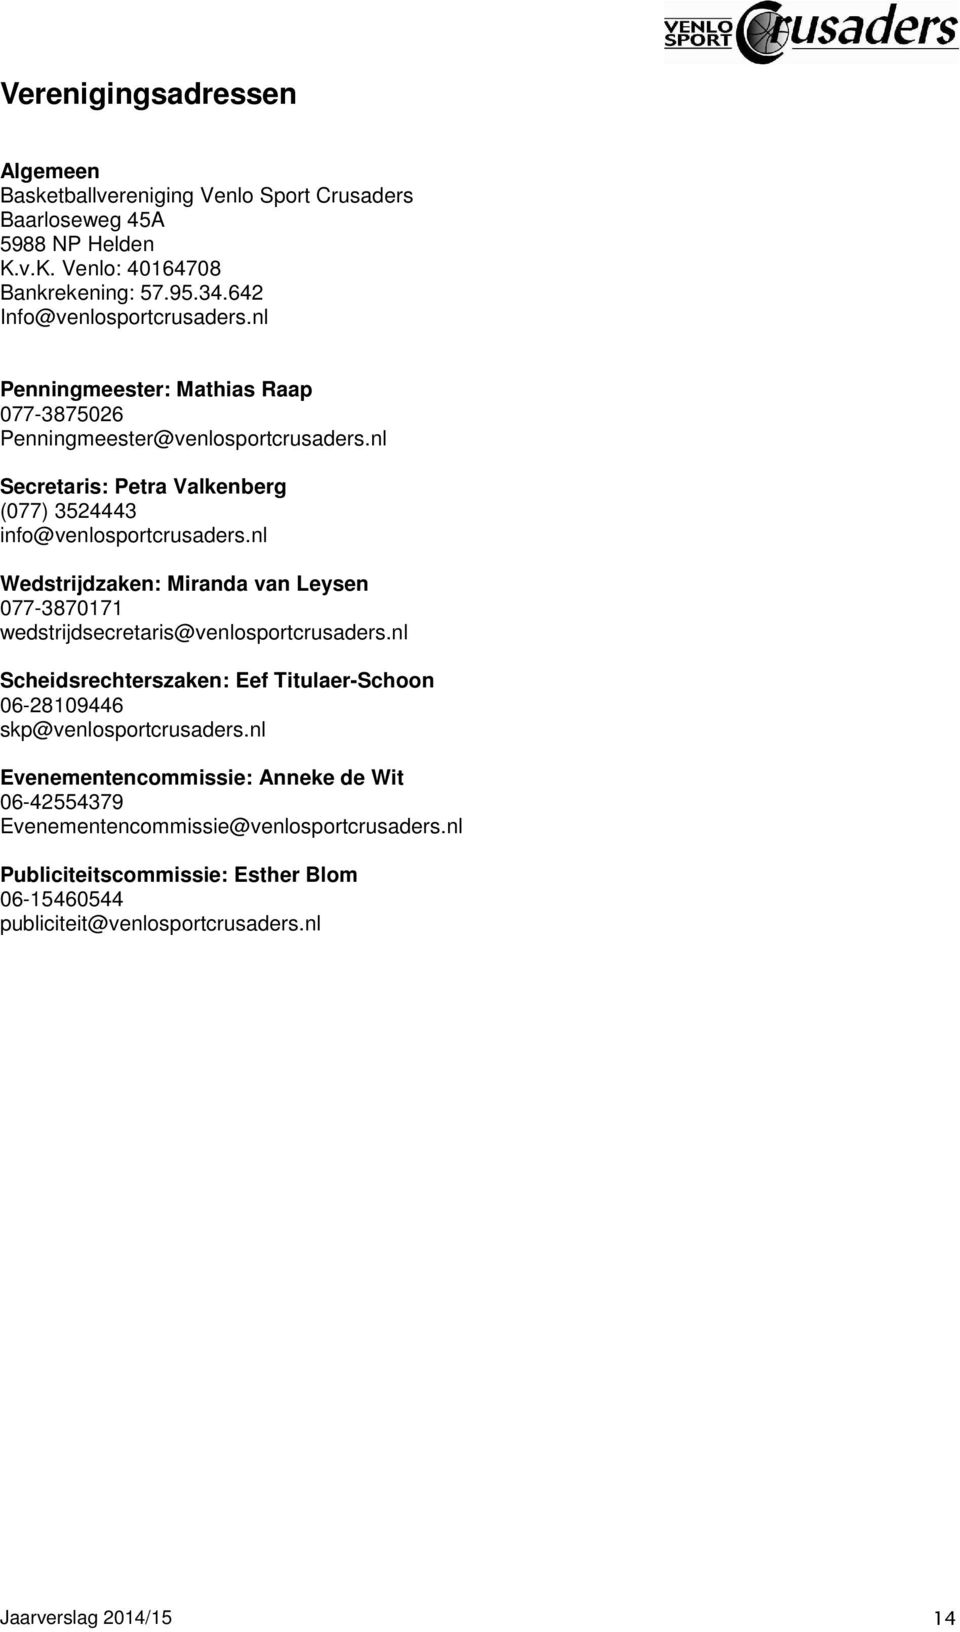 nl Secretaris: Petra Valkenberg (077) 3524443 info@venlosportcrusaders.nl Wedstrijdzaken: Miranda van Leysen 077-3870171 wedstrijdsecretaris@venlosportcrusaders.